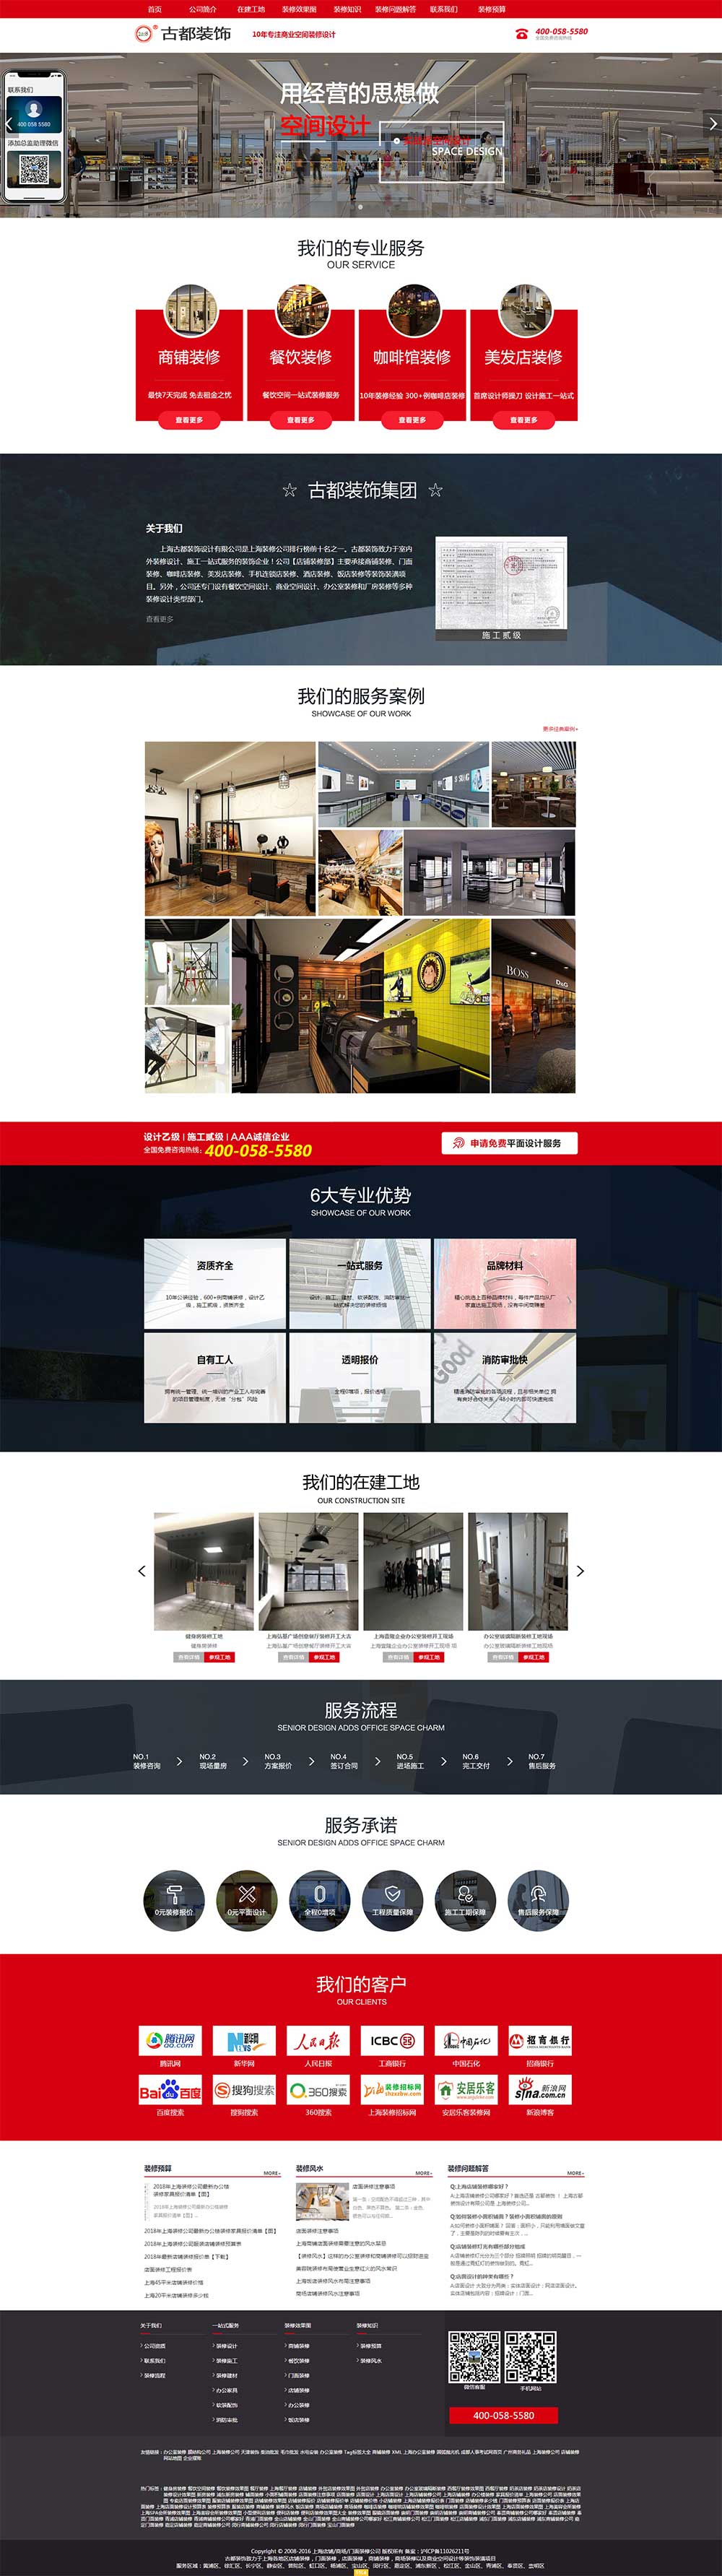 贵州网站运营公司：古都装饰商铺装修网站（www.shdpzx.com）(图2)